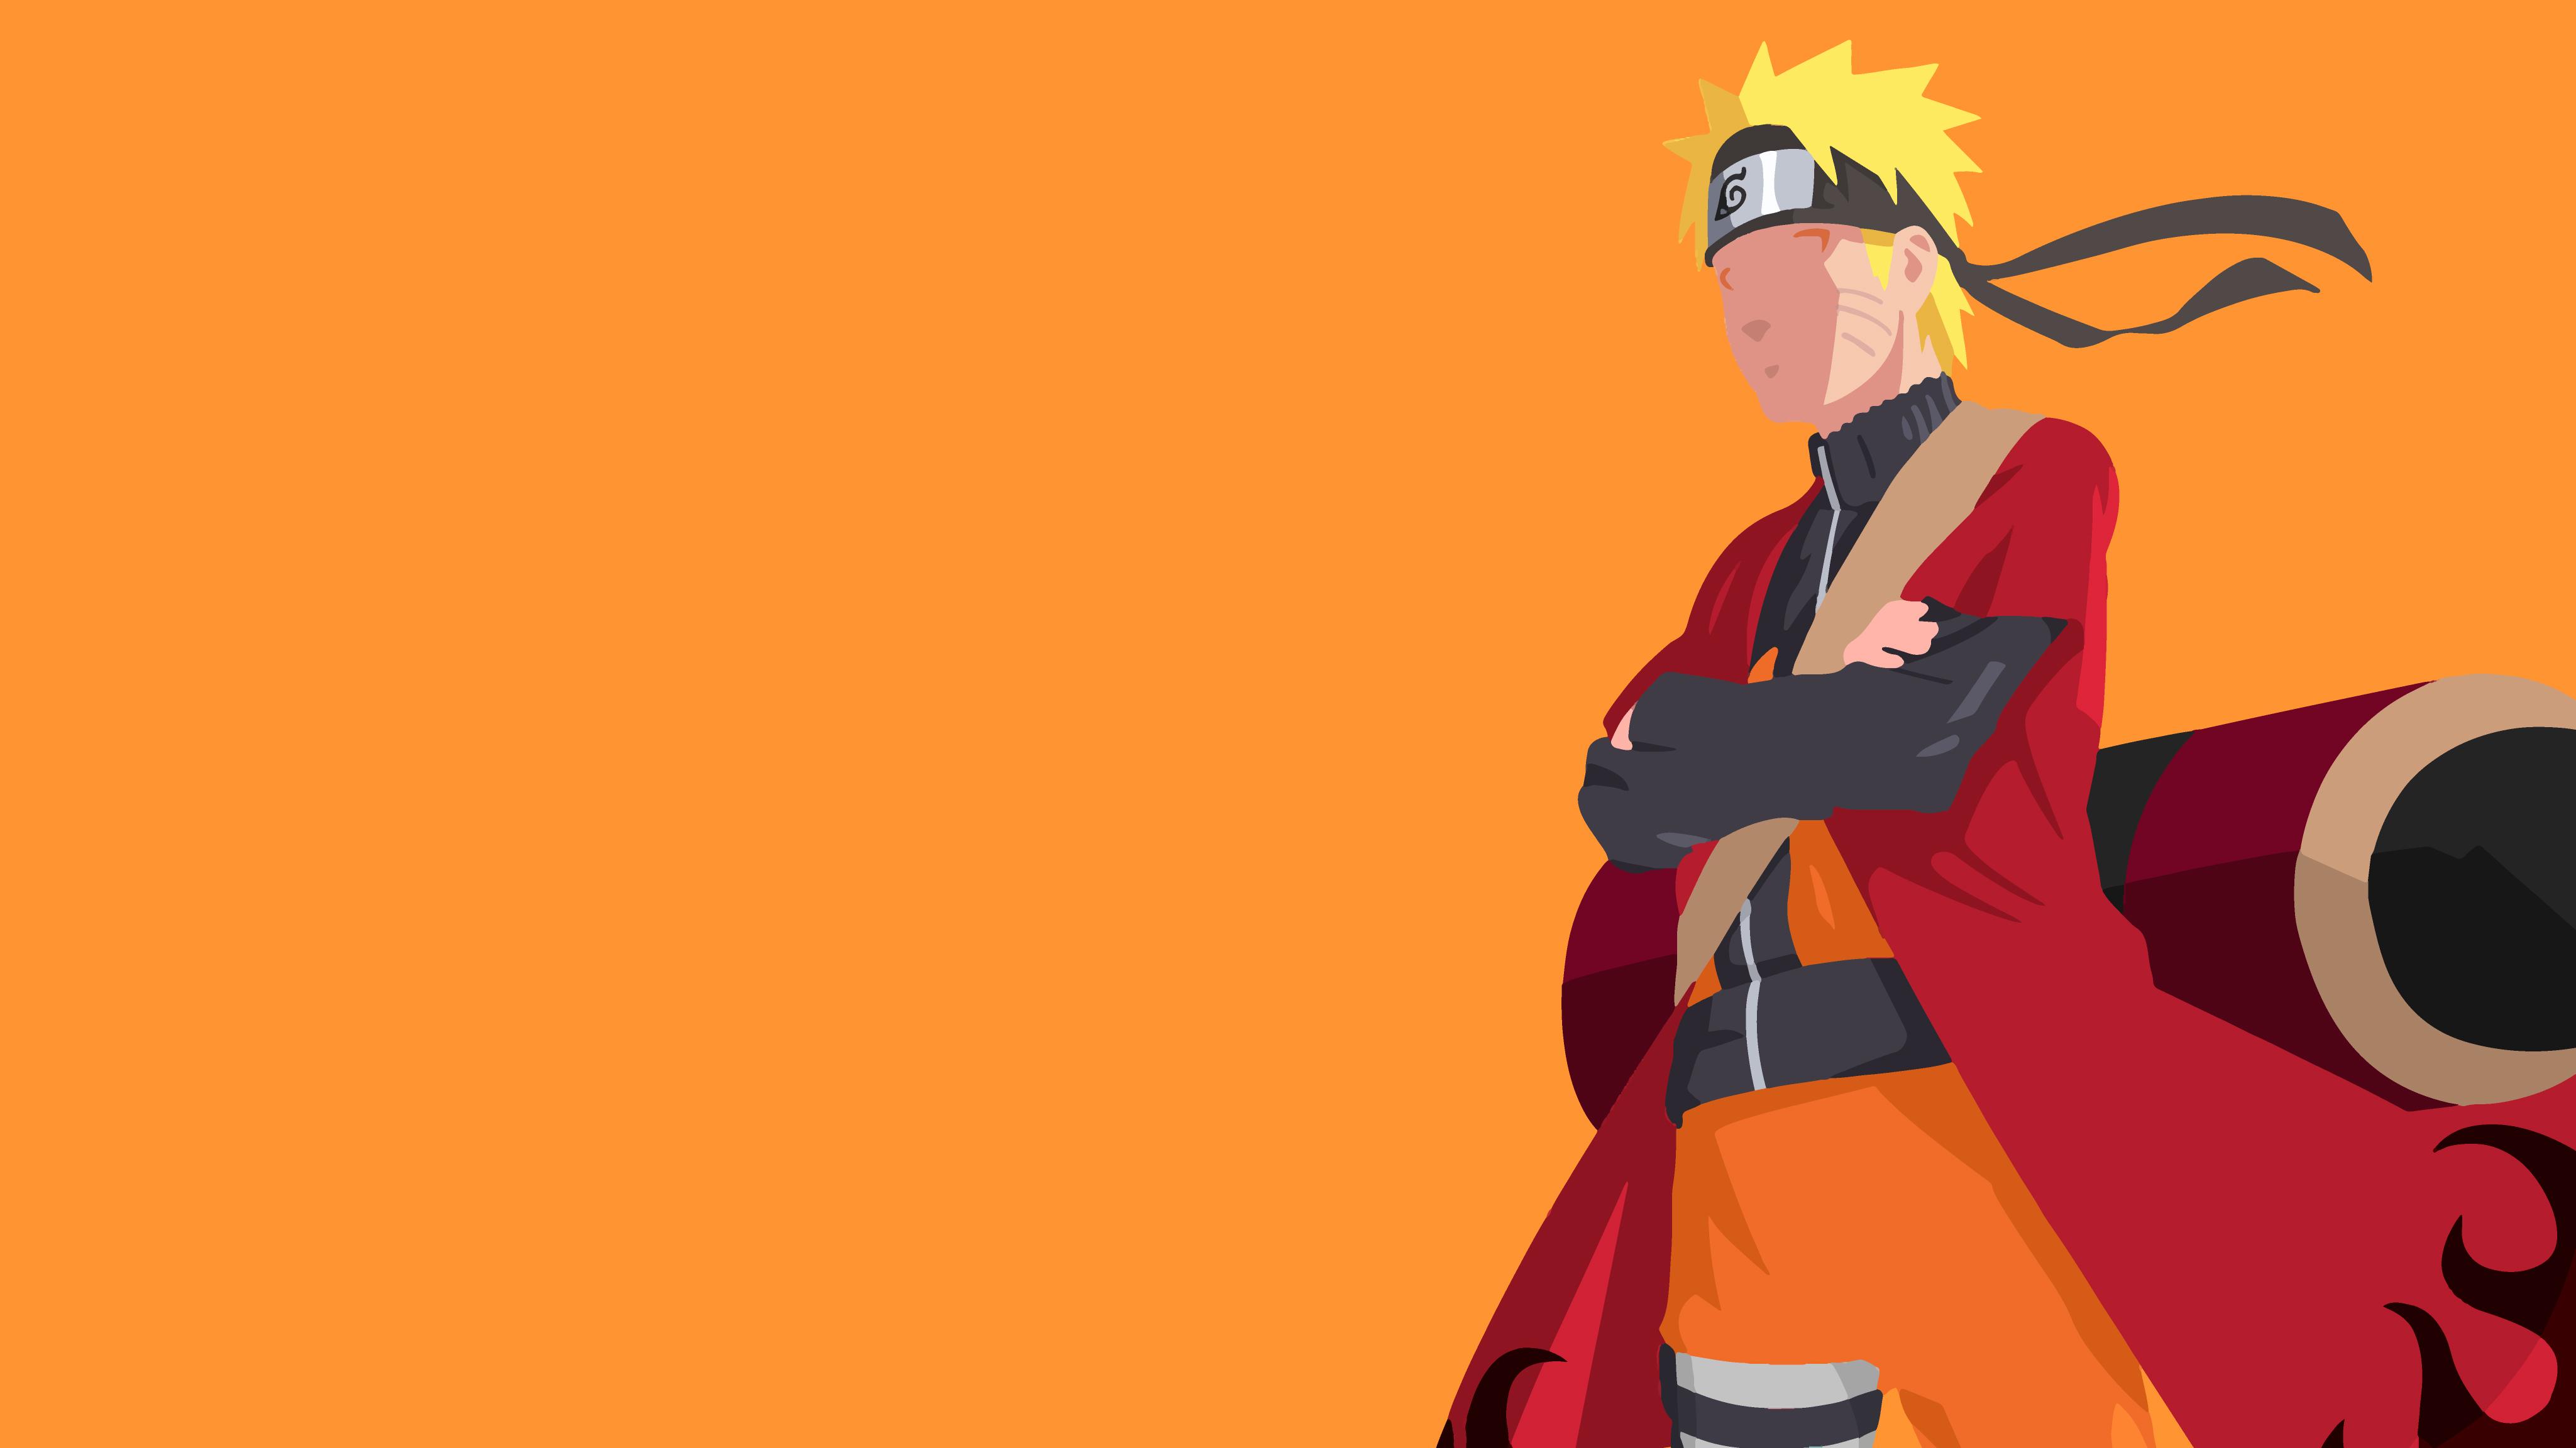 Muốn tìm kiếm những hình nền anime Naruto chất lượng siêu nét? Đã đến lúc truy cập vào bộ sưu tập Naruto Ultra HD Wallpapers và thưởng thức những tác phẩm nghệ thuật độc đáo chỉ có tại đây.